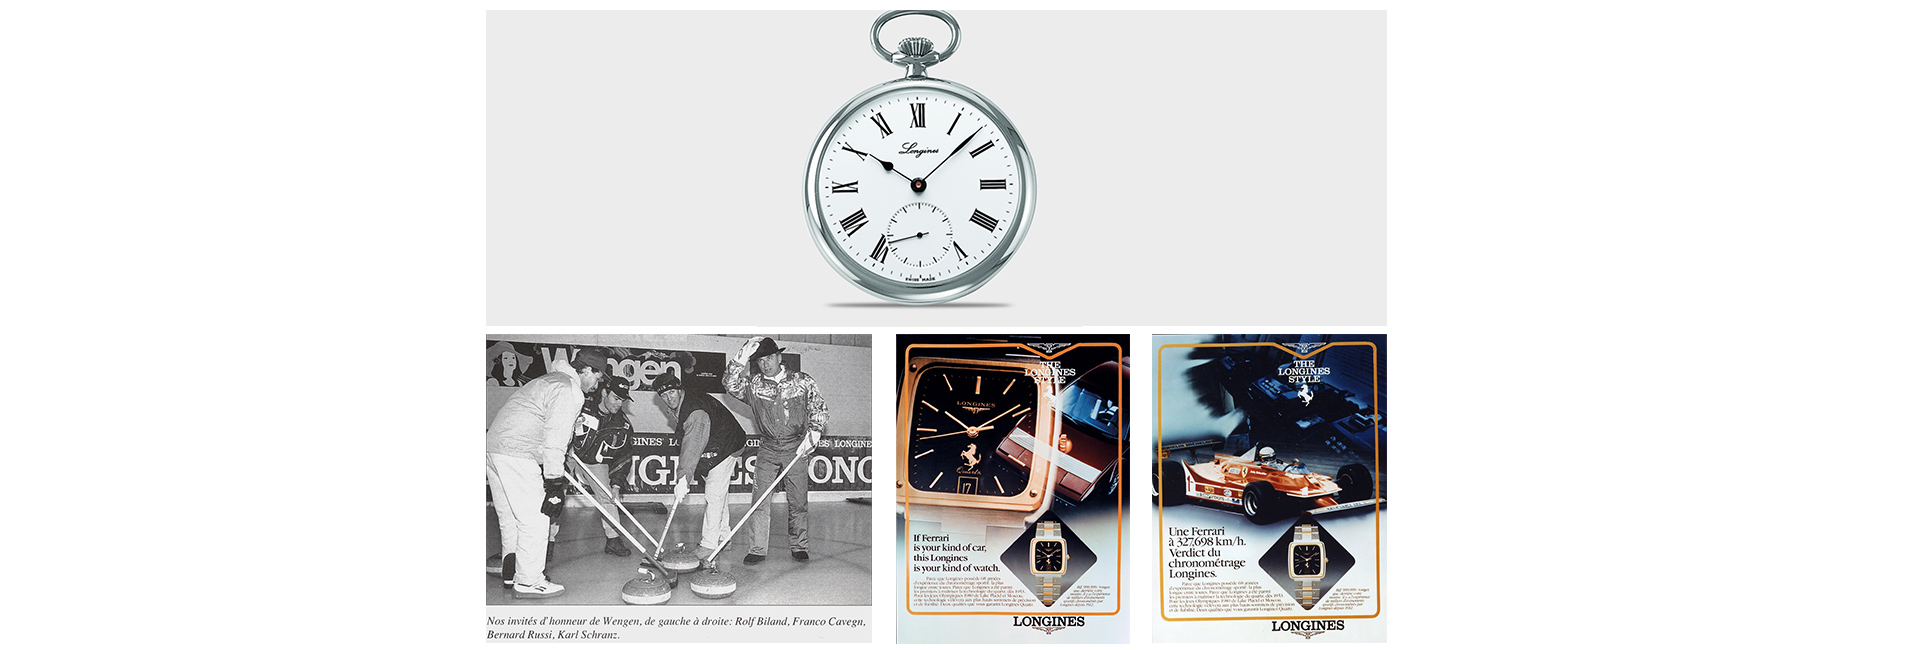 Карманные часы, 1995; Часы с эмблемой Ferrari, 1979